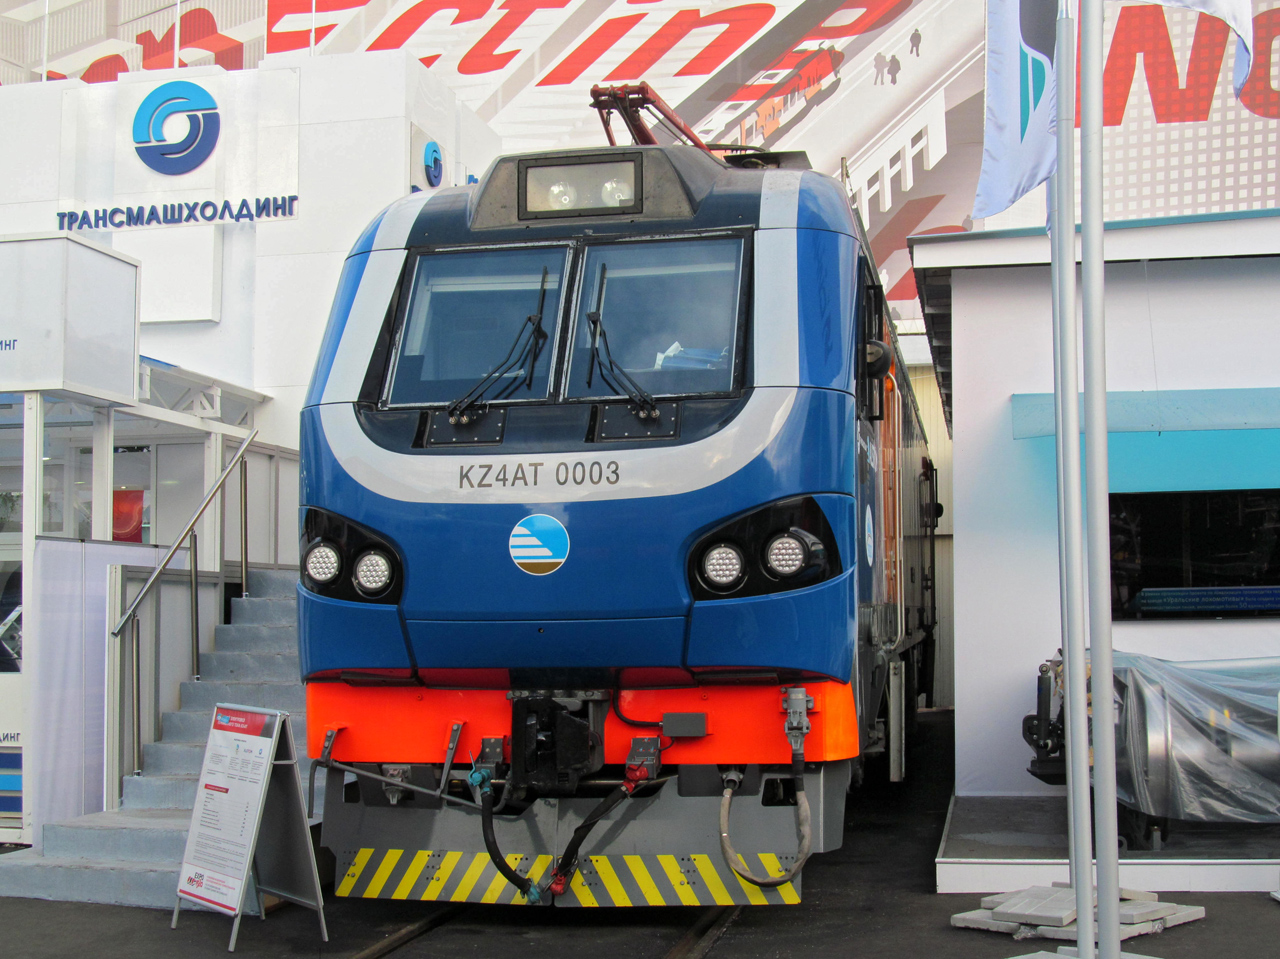 KZ4AT-0003; Московская железная дорога — V Международный железнодорожный салон "ЭКСПО 1520" 2015